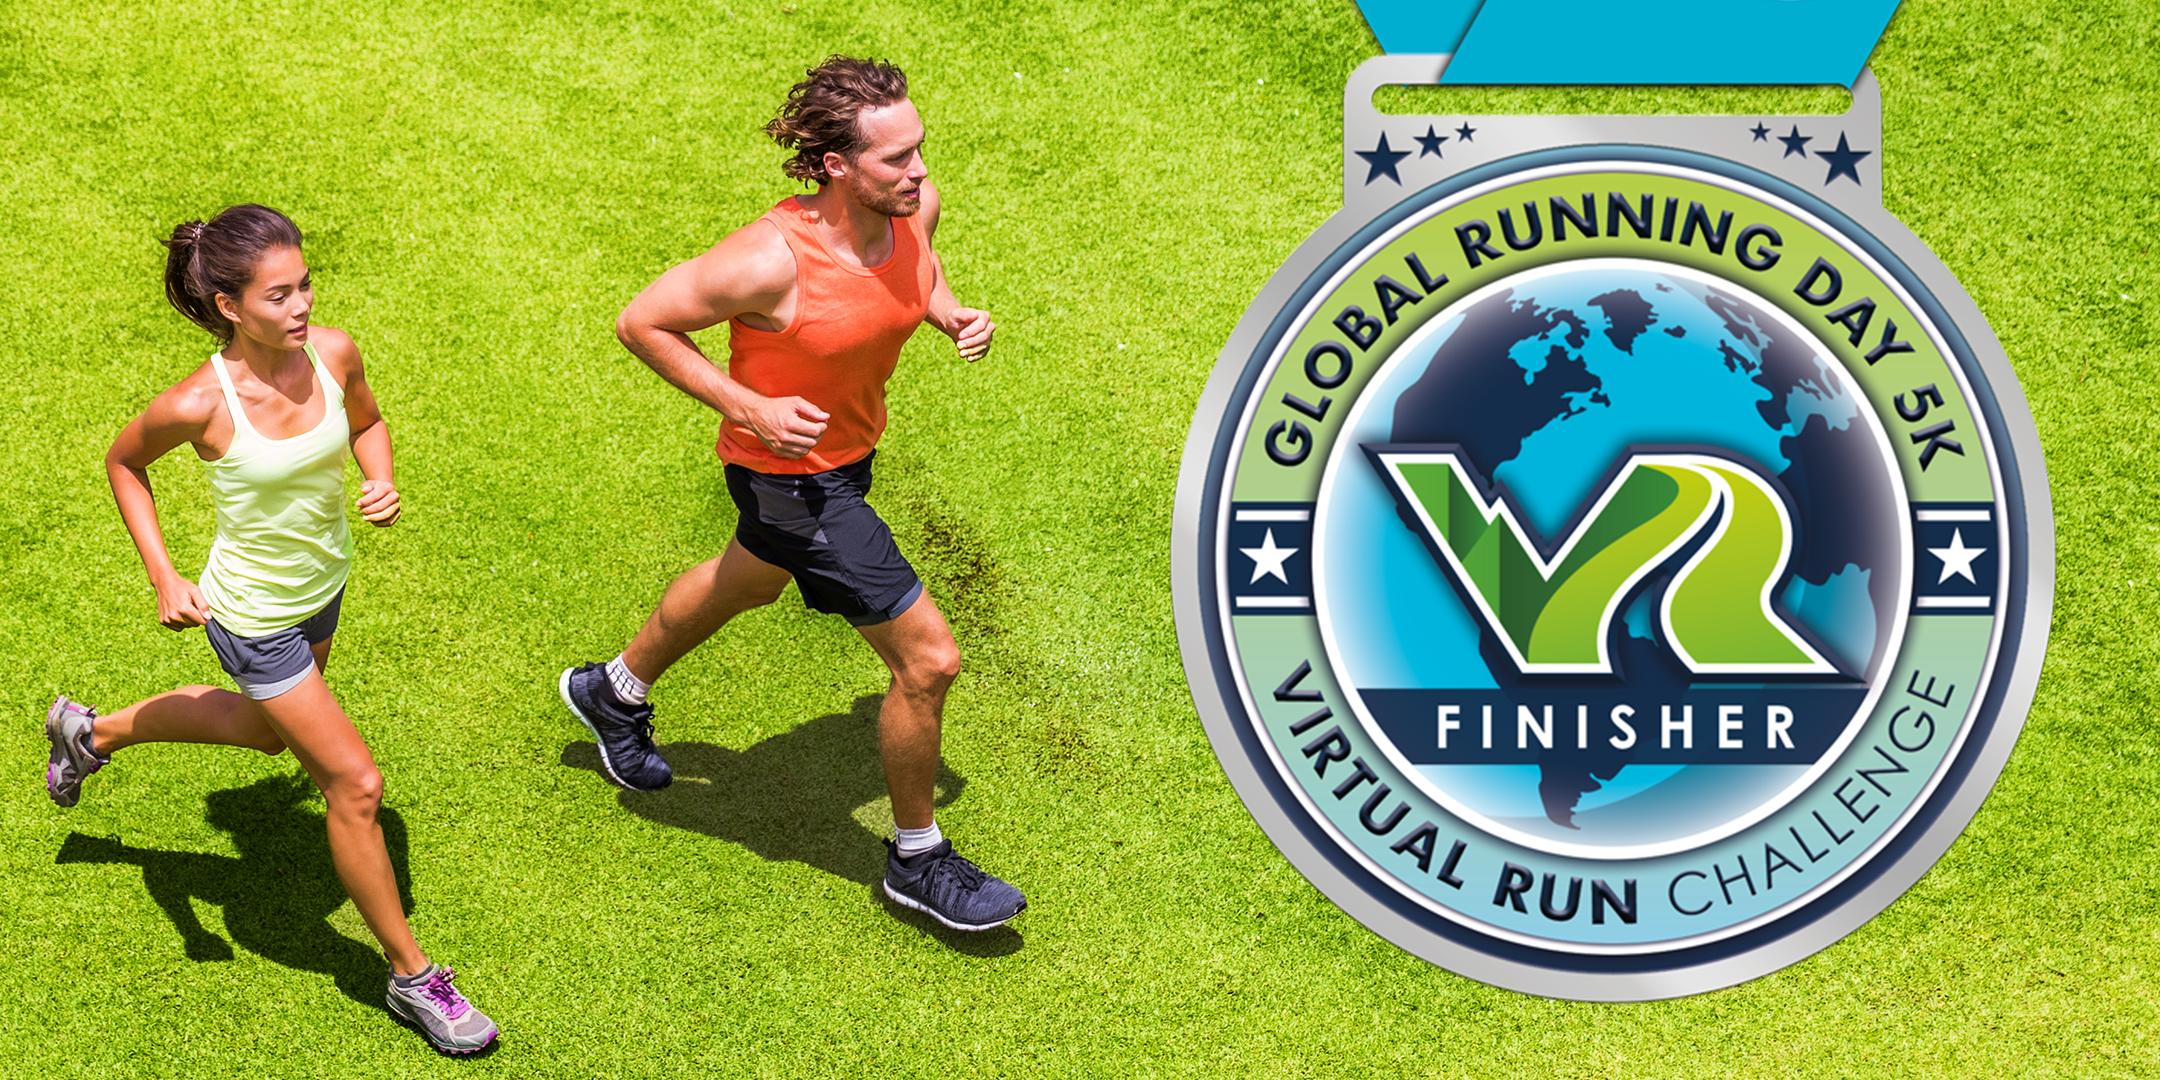 2020 Global Running Day Free Virtual 5k - Detroit